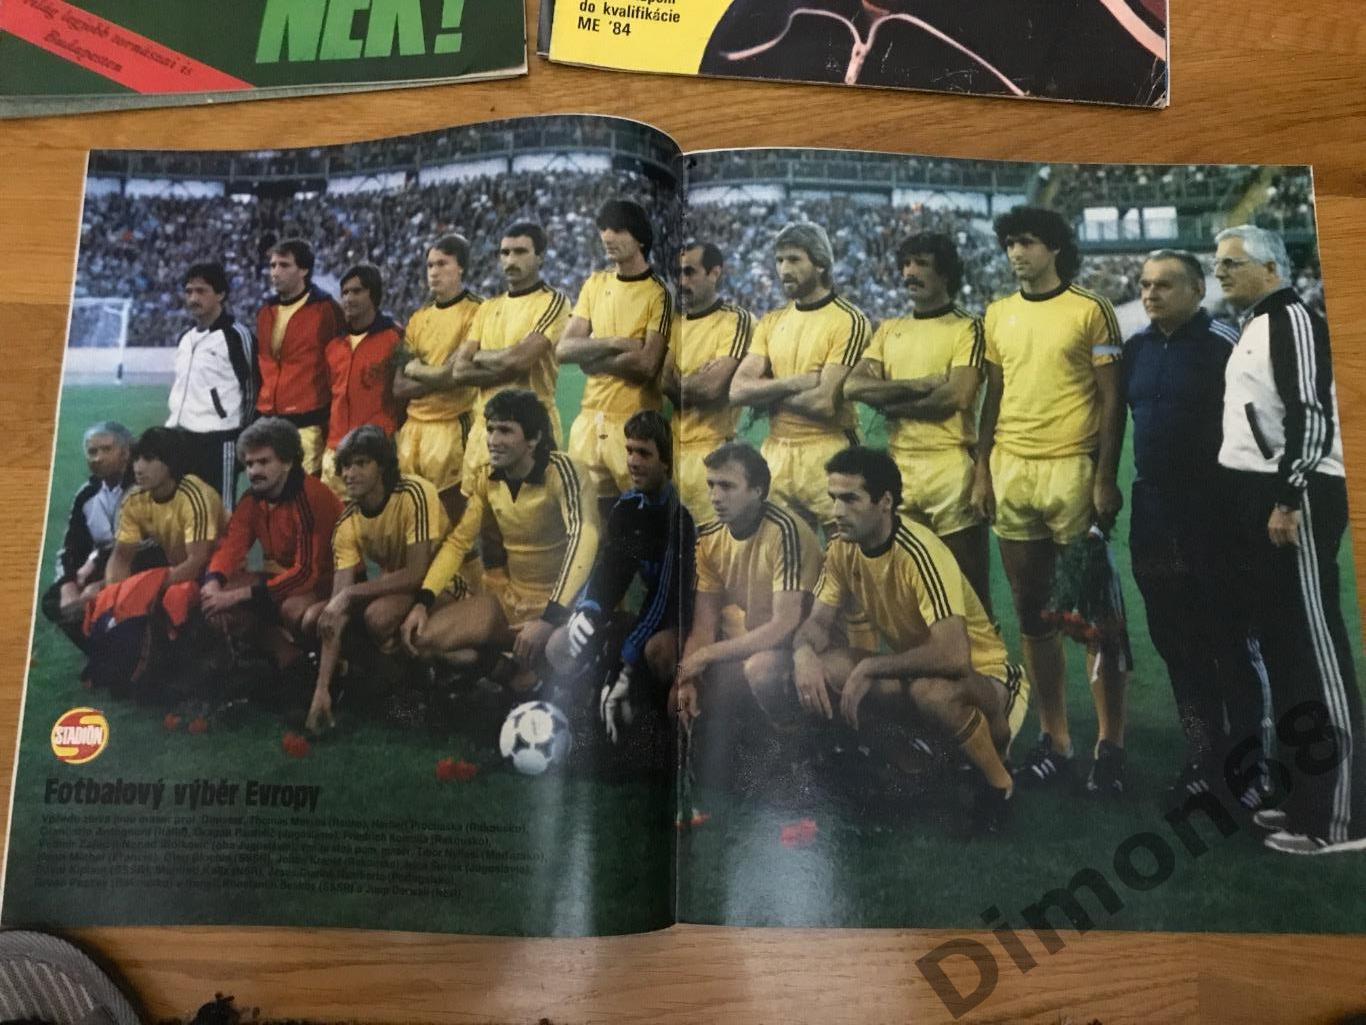 стадион 1981г постер сб европы 1